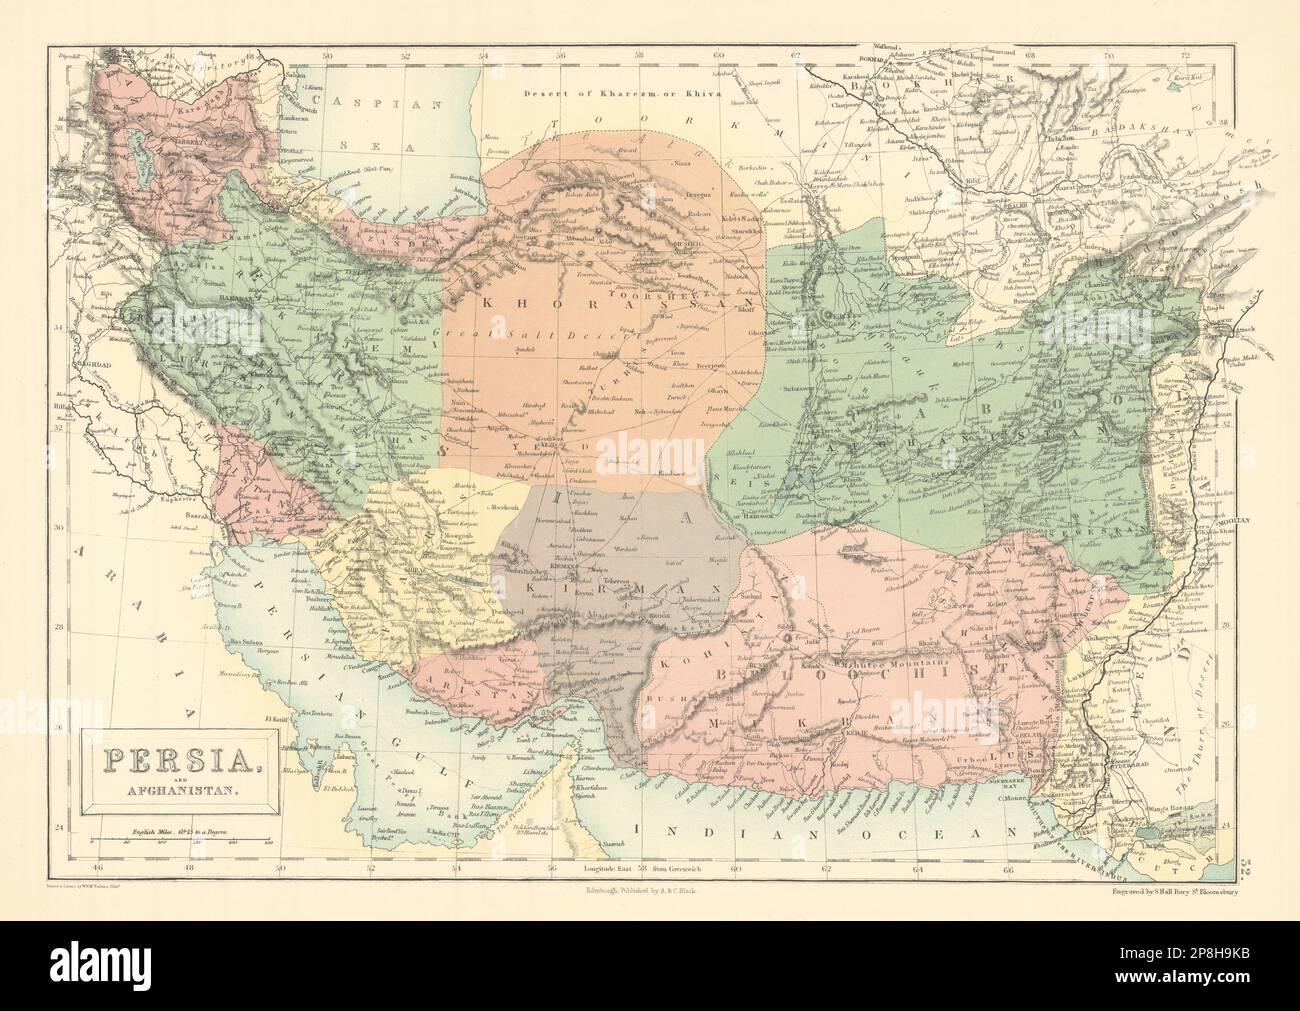 Persien Und Afghanistan. Im Iran. VAE „Piratenküste“. Debai (Dubai). Karte VON HALLE 1862 Stockfoto